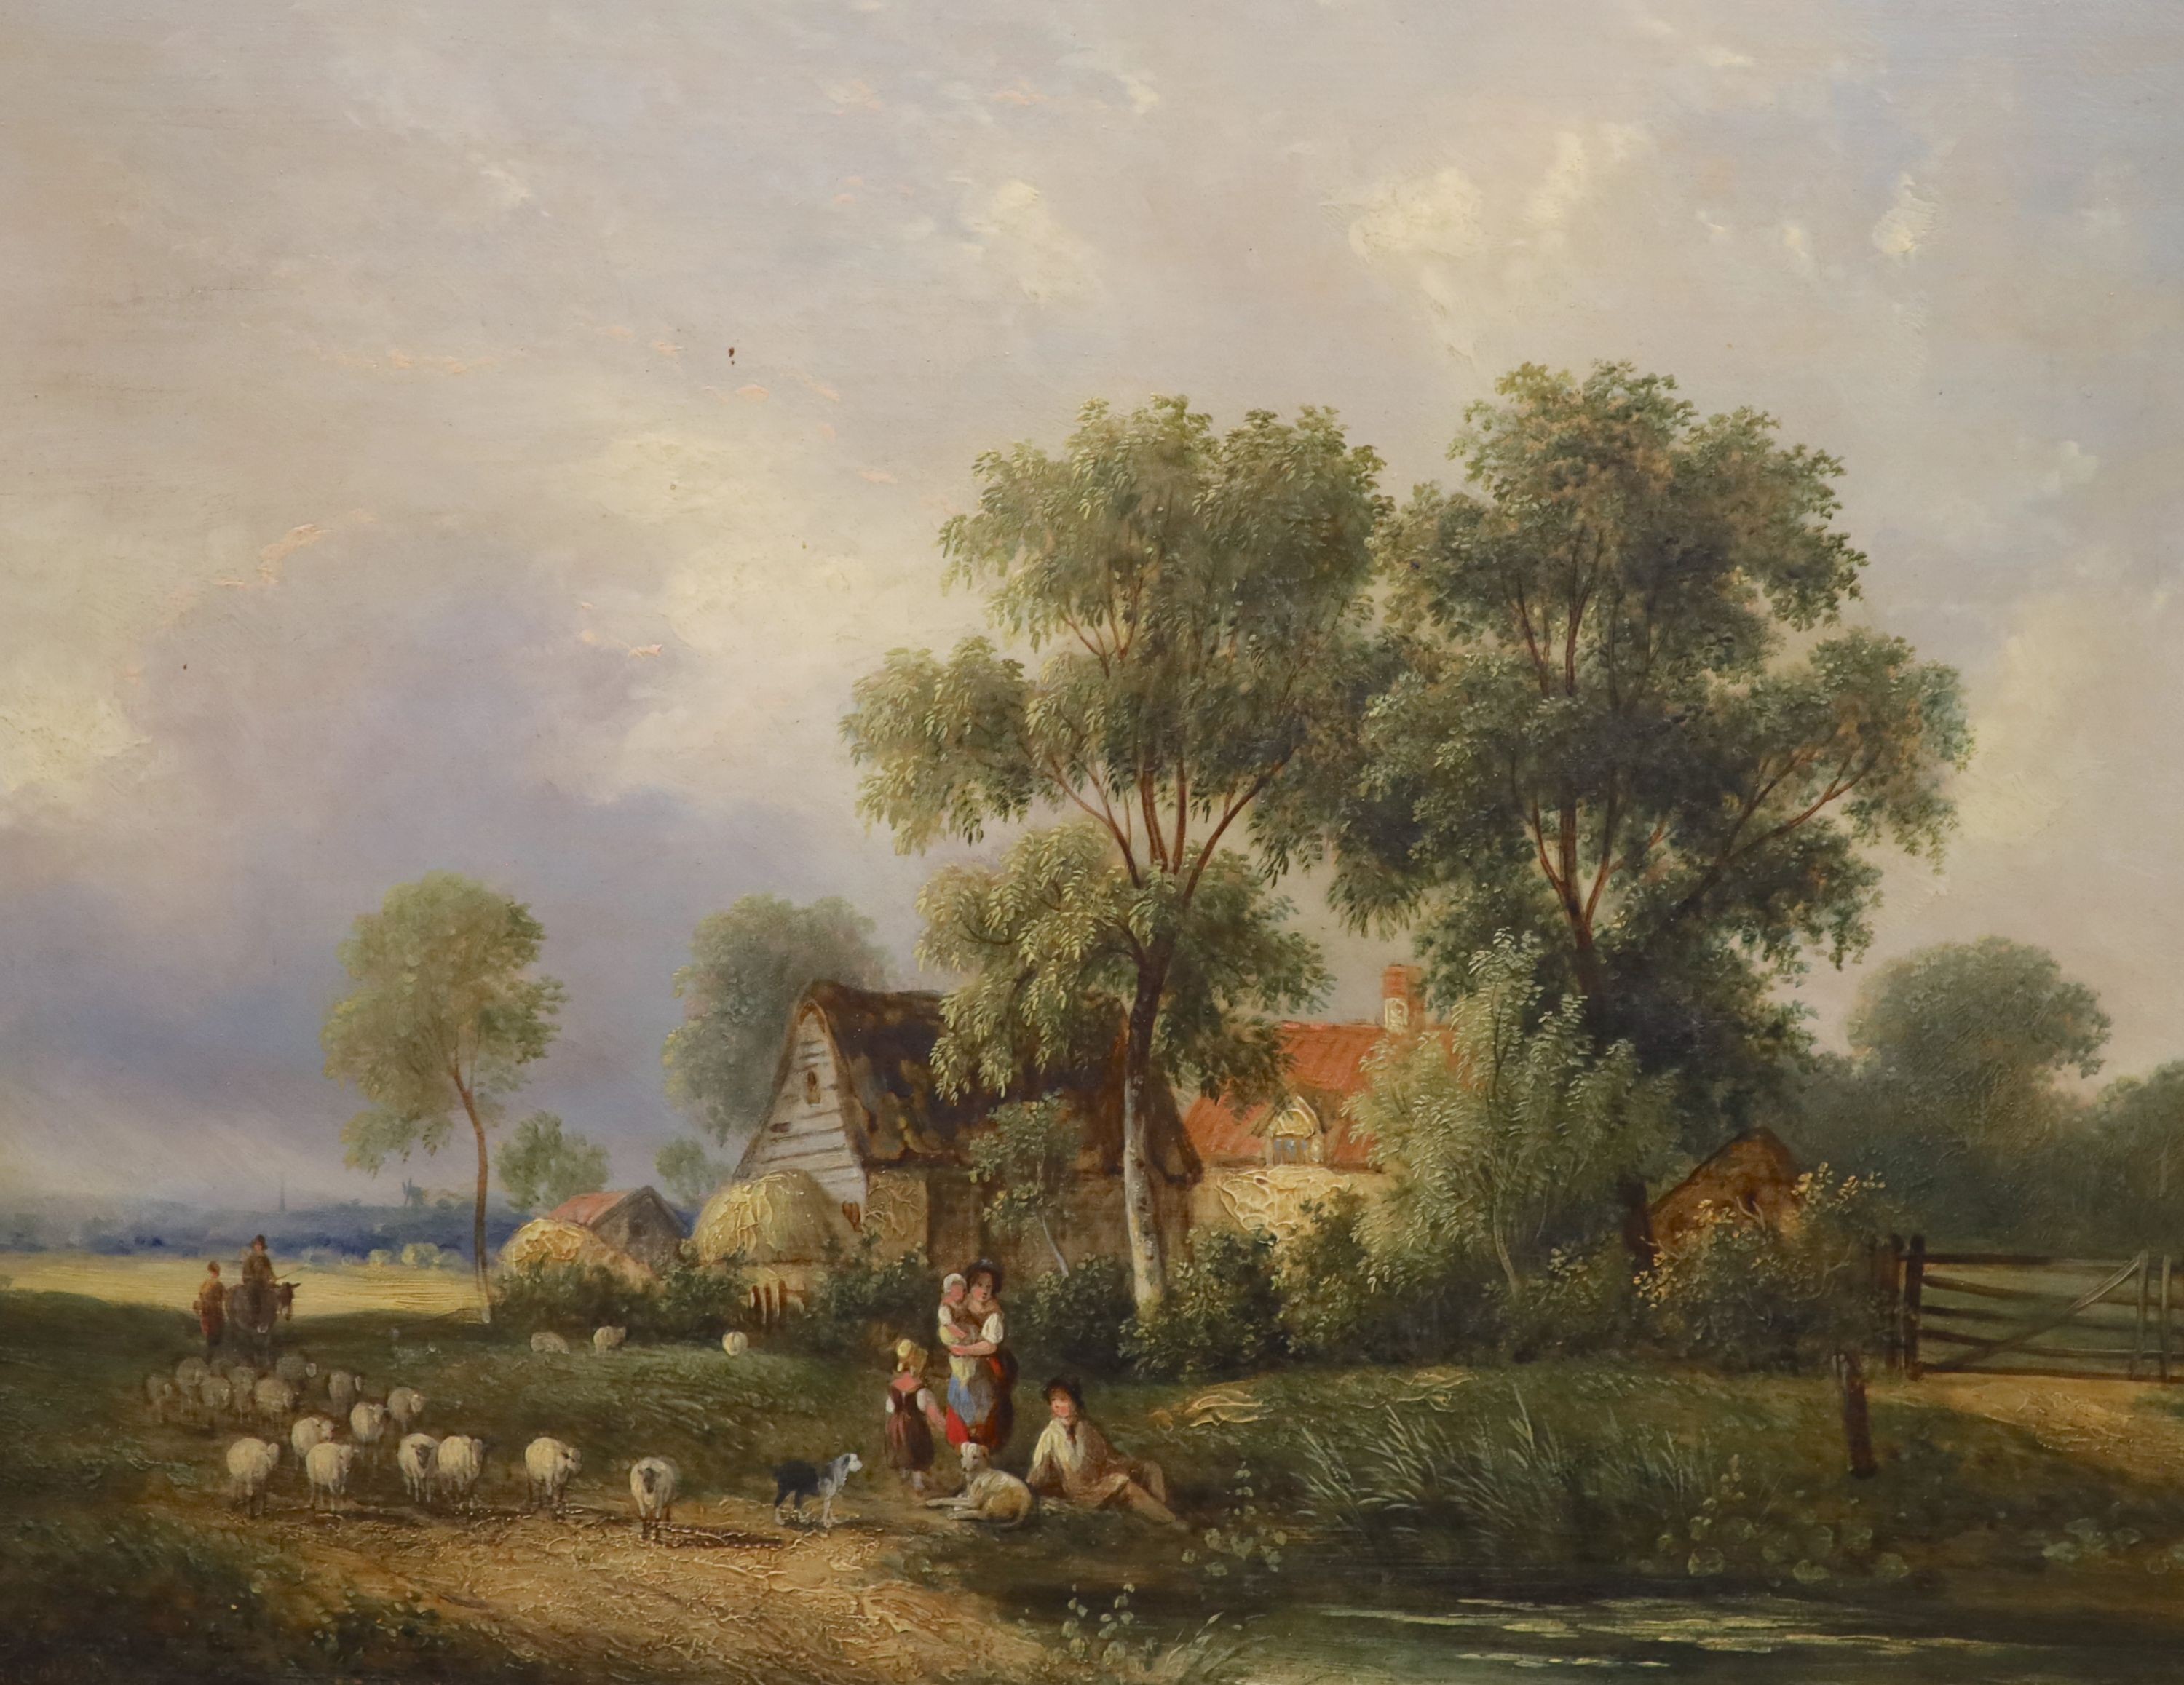 Samuel David Colkett (1806-1863), 'Near Norwich', oil on board, 30 x 38.5cm